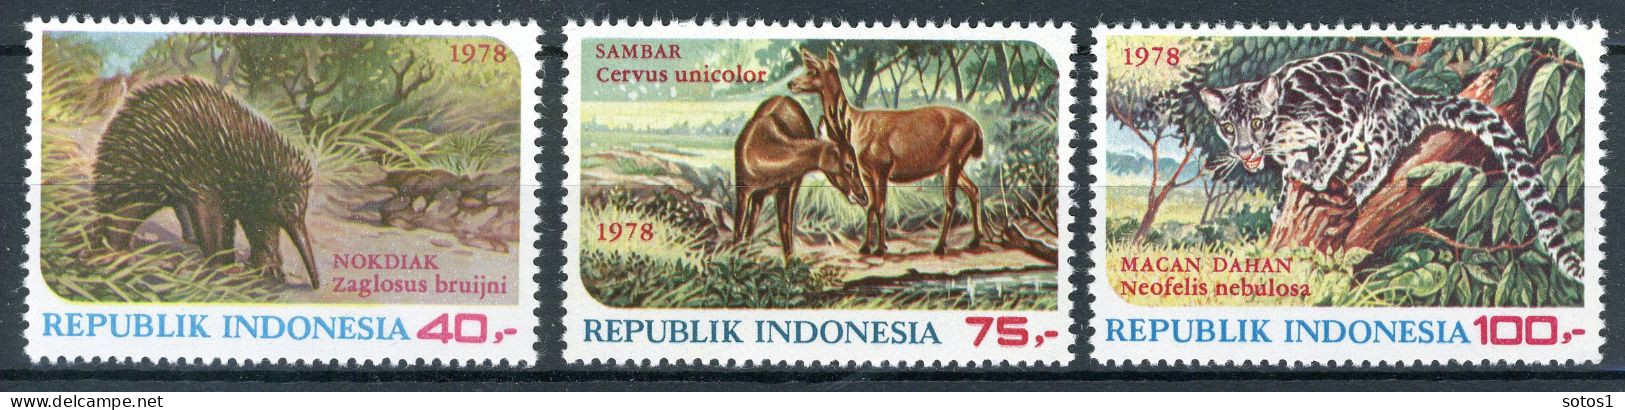 INDONESIE: ZB 930/932 MNH 1978 Beschermde Dieren - Indonesia